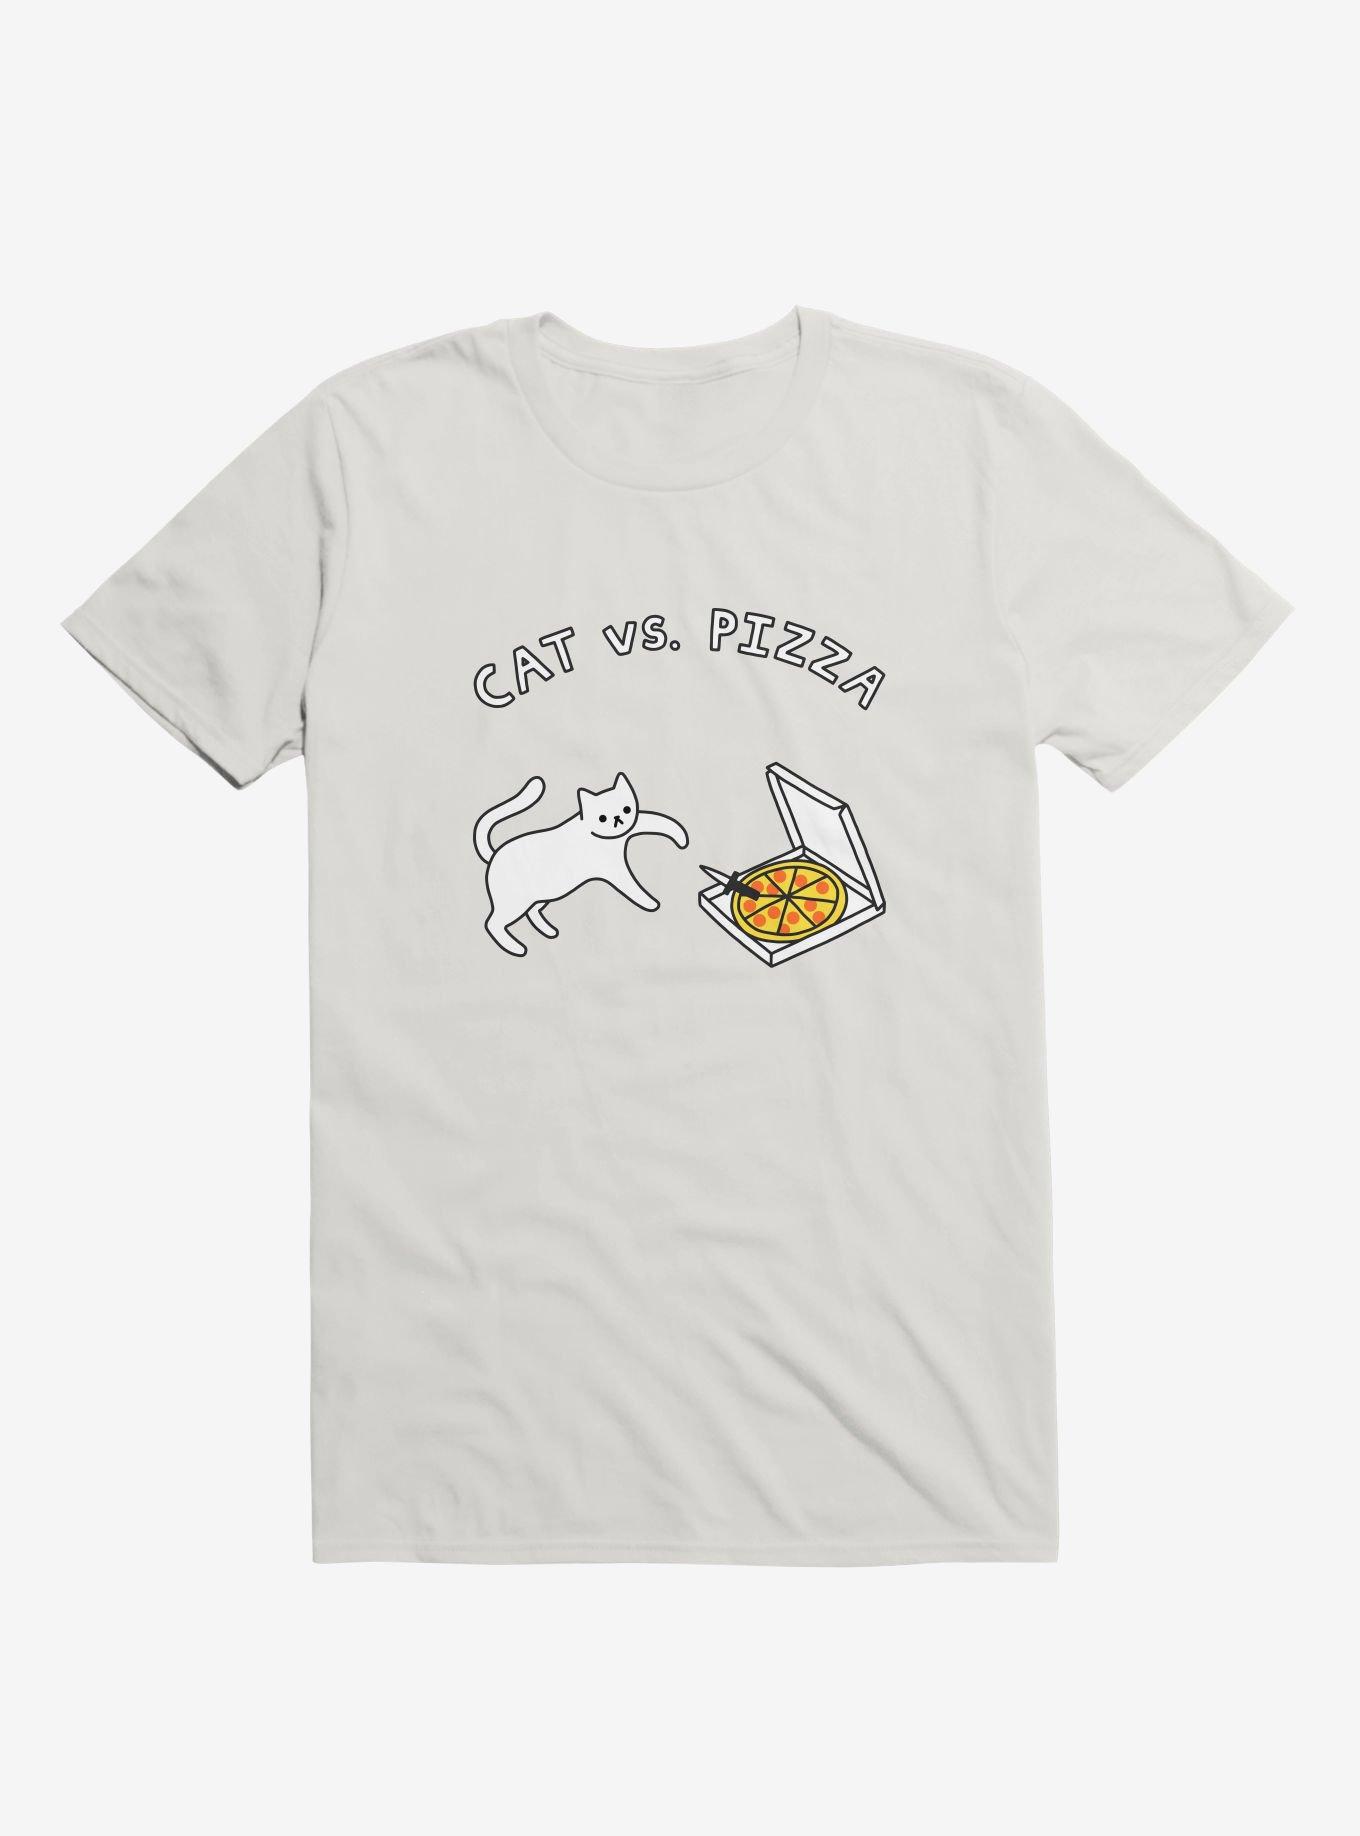 Cat Vs. Pizza White T-Shirt